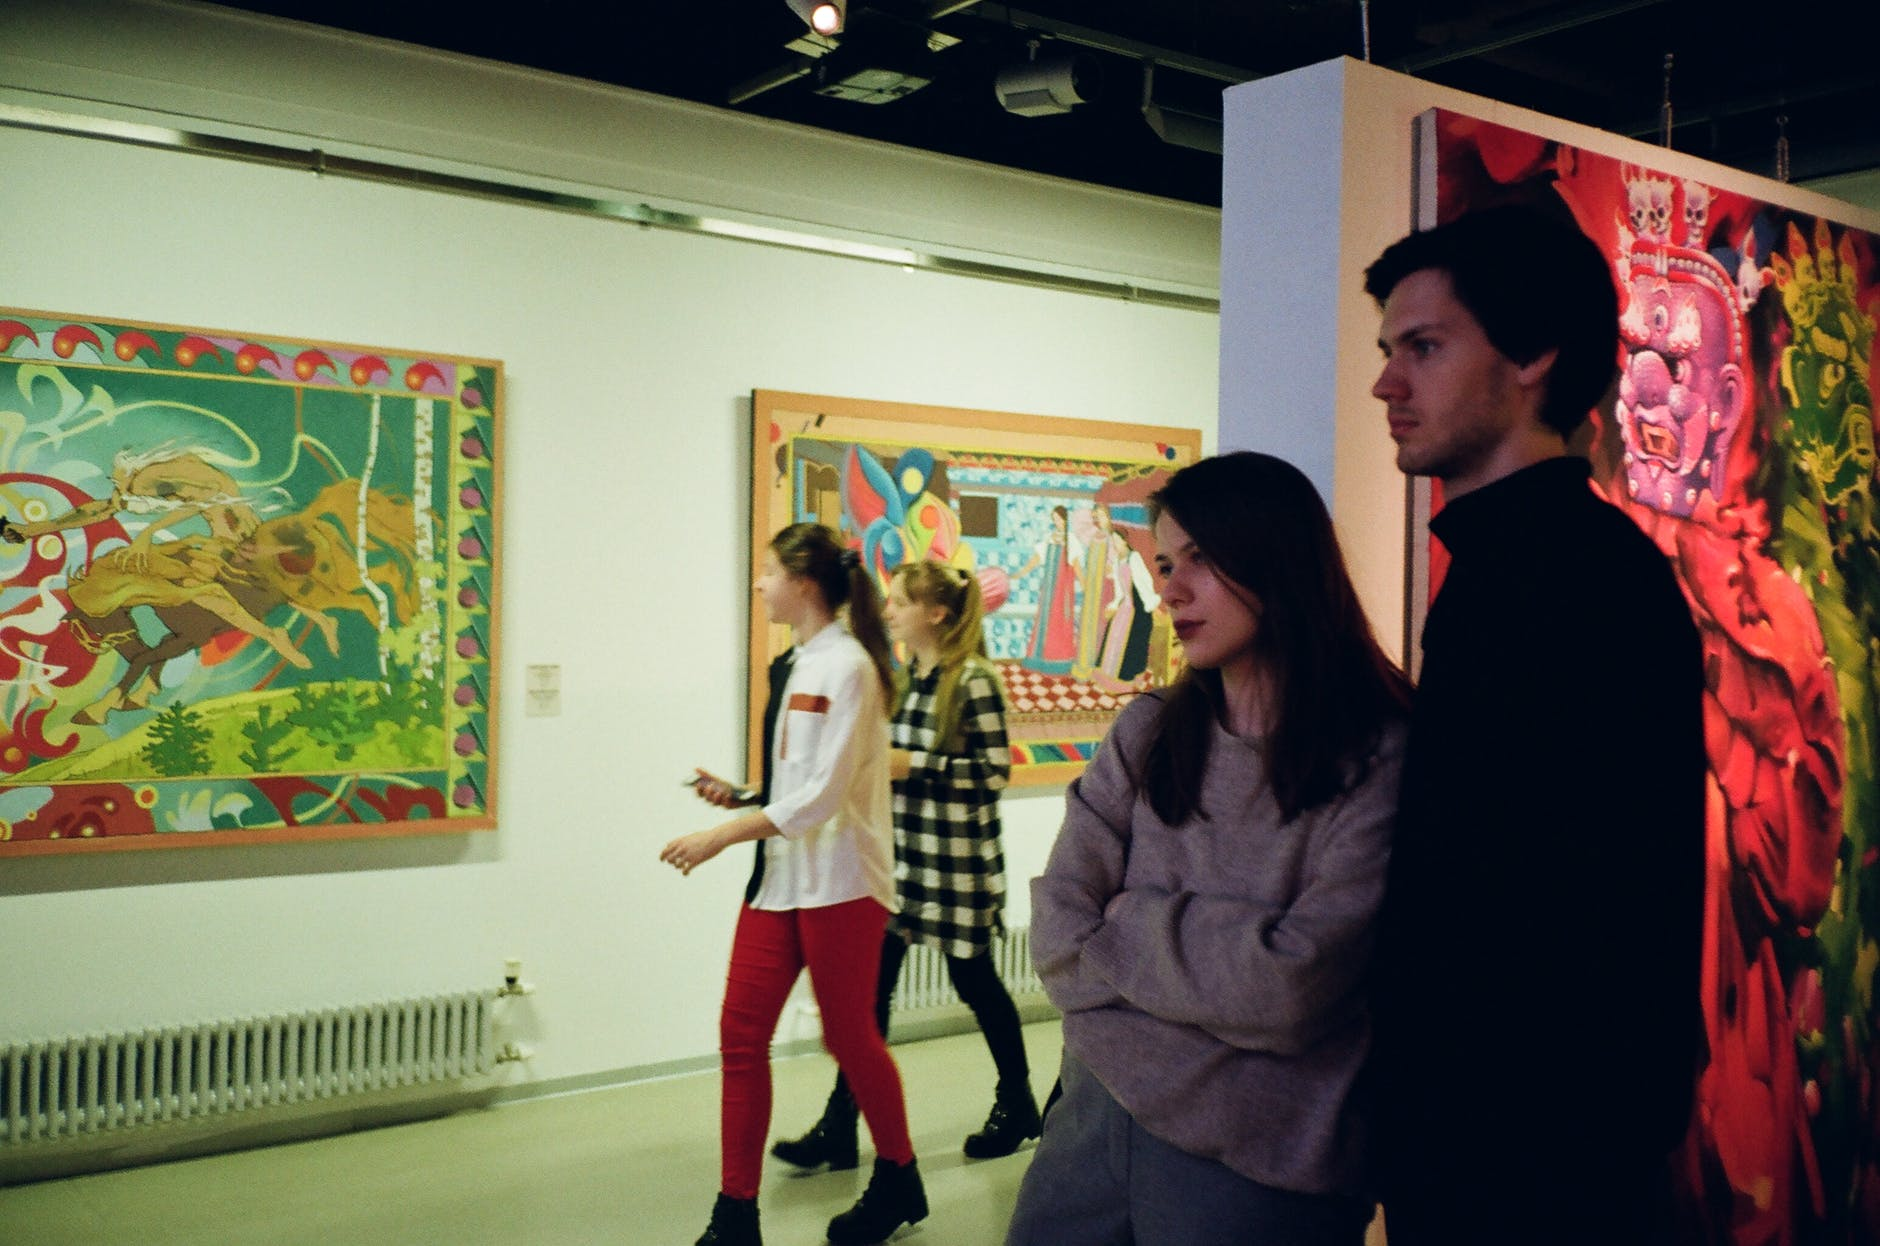 Visiting Dadaism Art Gallery as A Date Idea